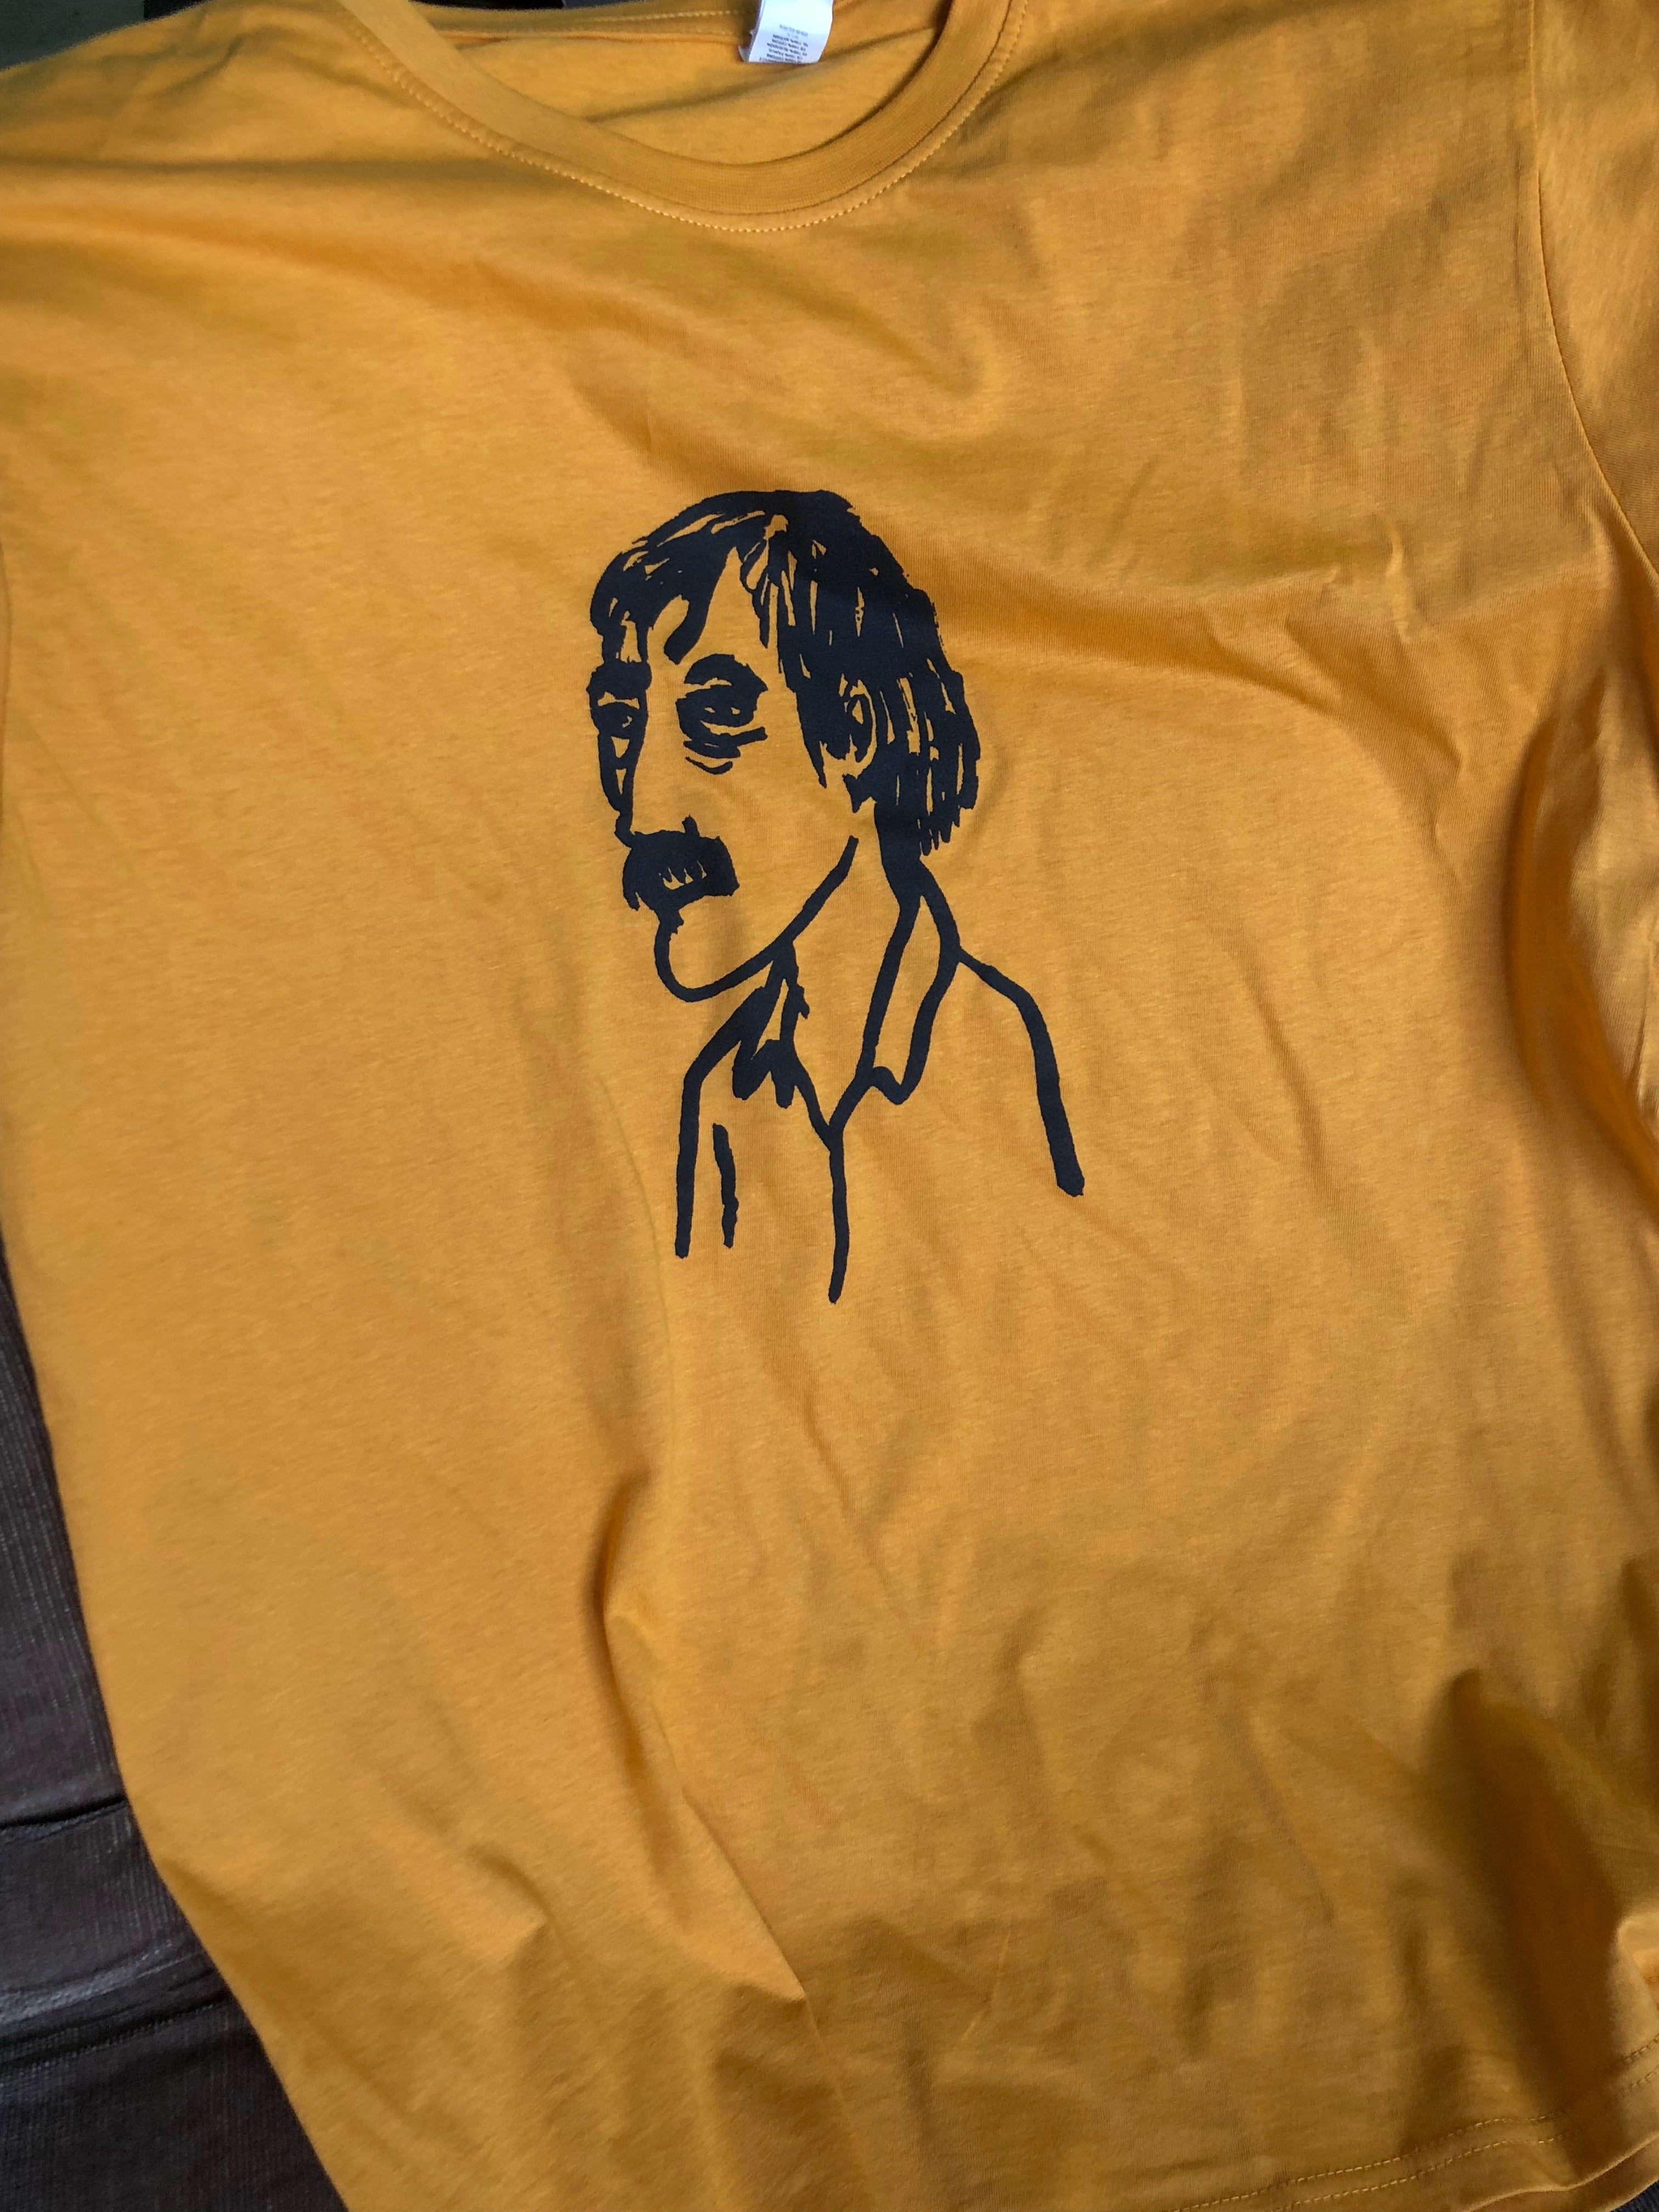 Pierre von Kleist T-shirt